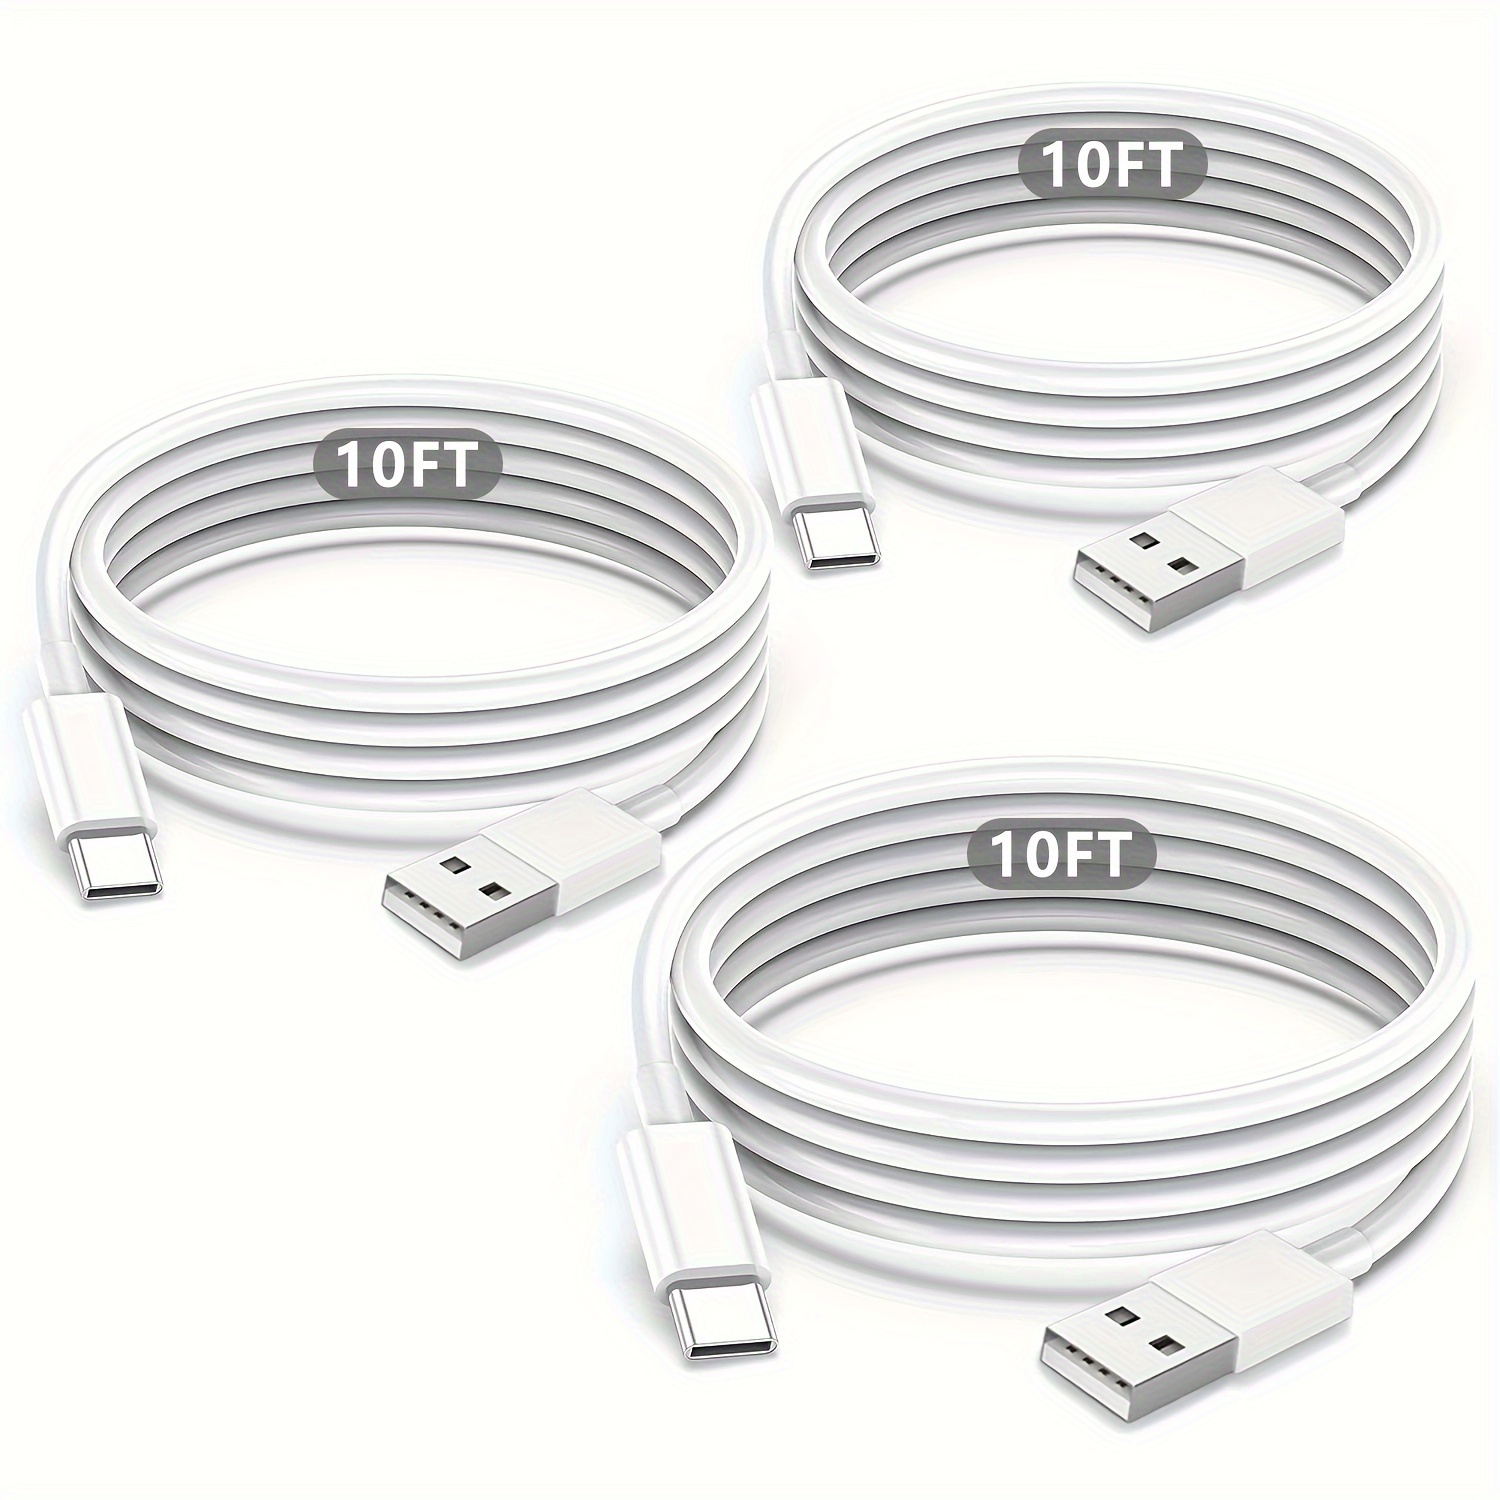 Cargador y cable USB-C de 30 W, compatible con productos Google y otros  dispositivos USB-C, cargador de teléfono Pixel de carga rápida, cable de  carga